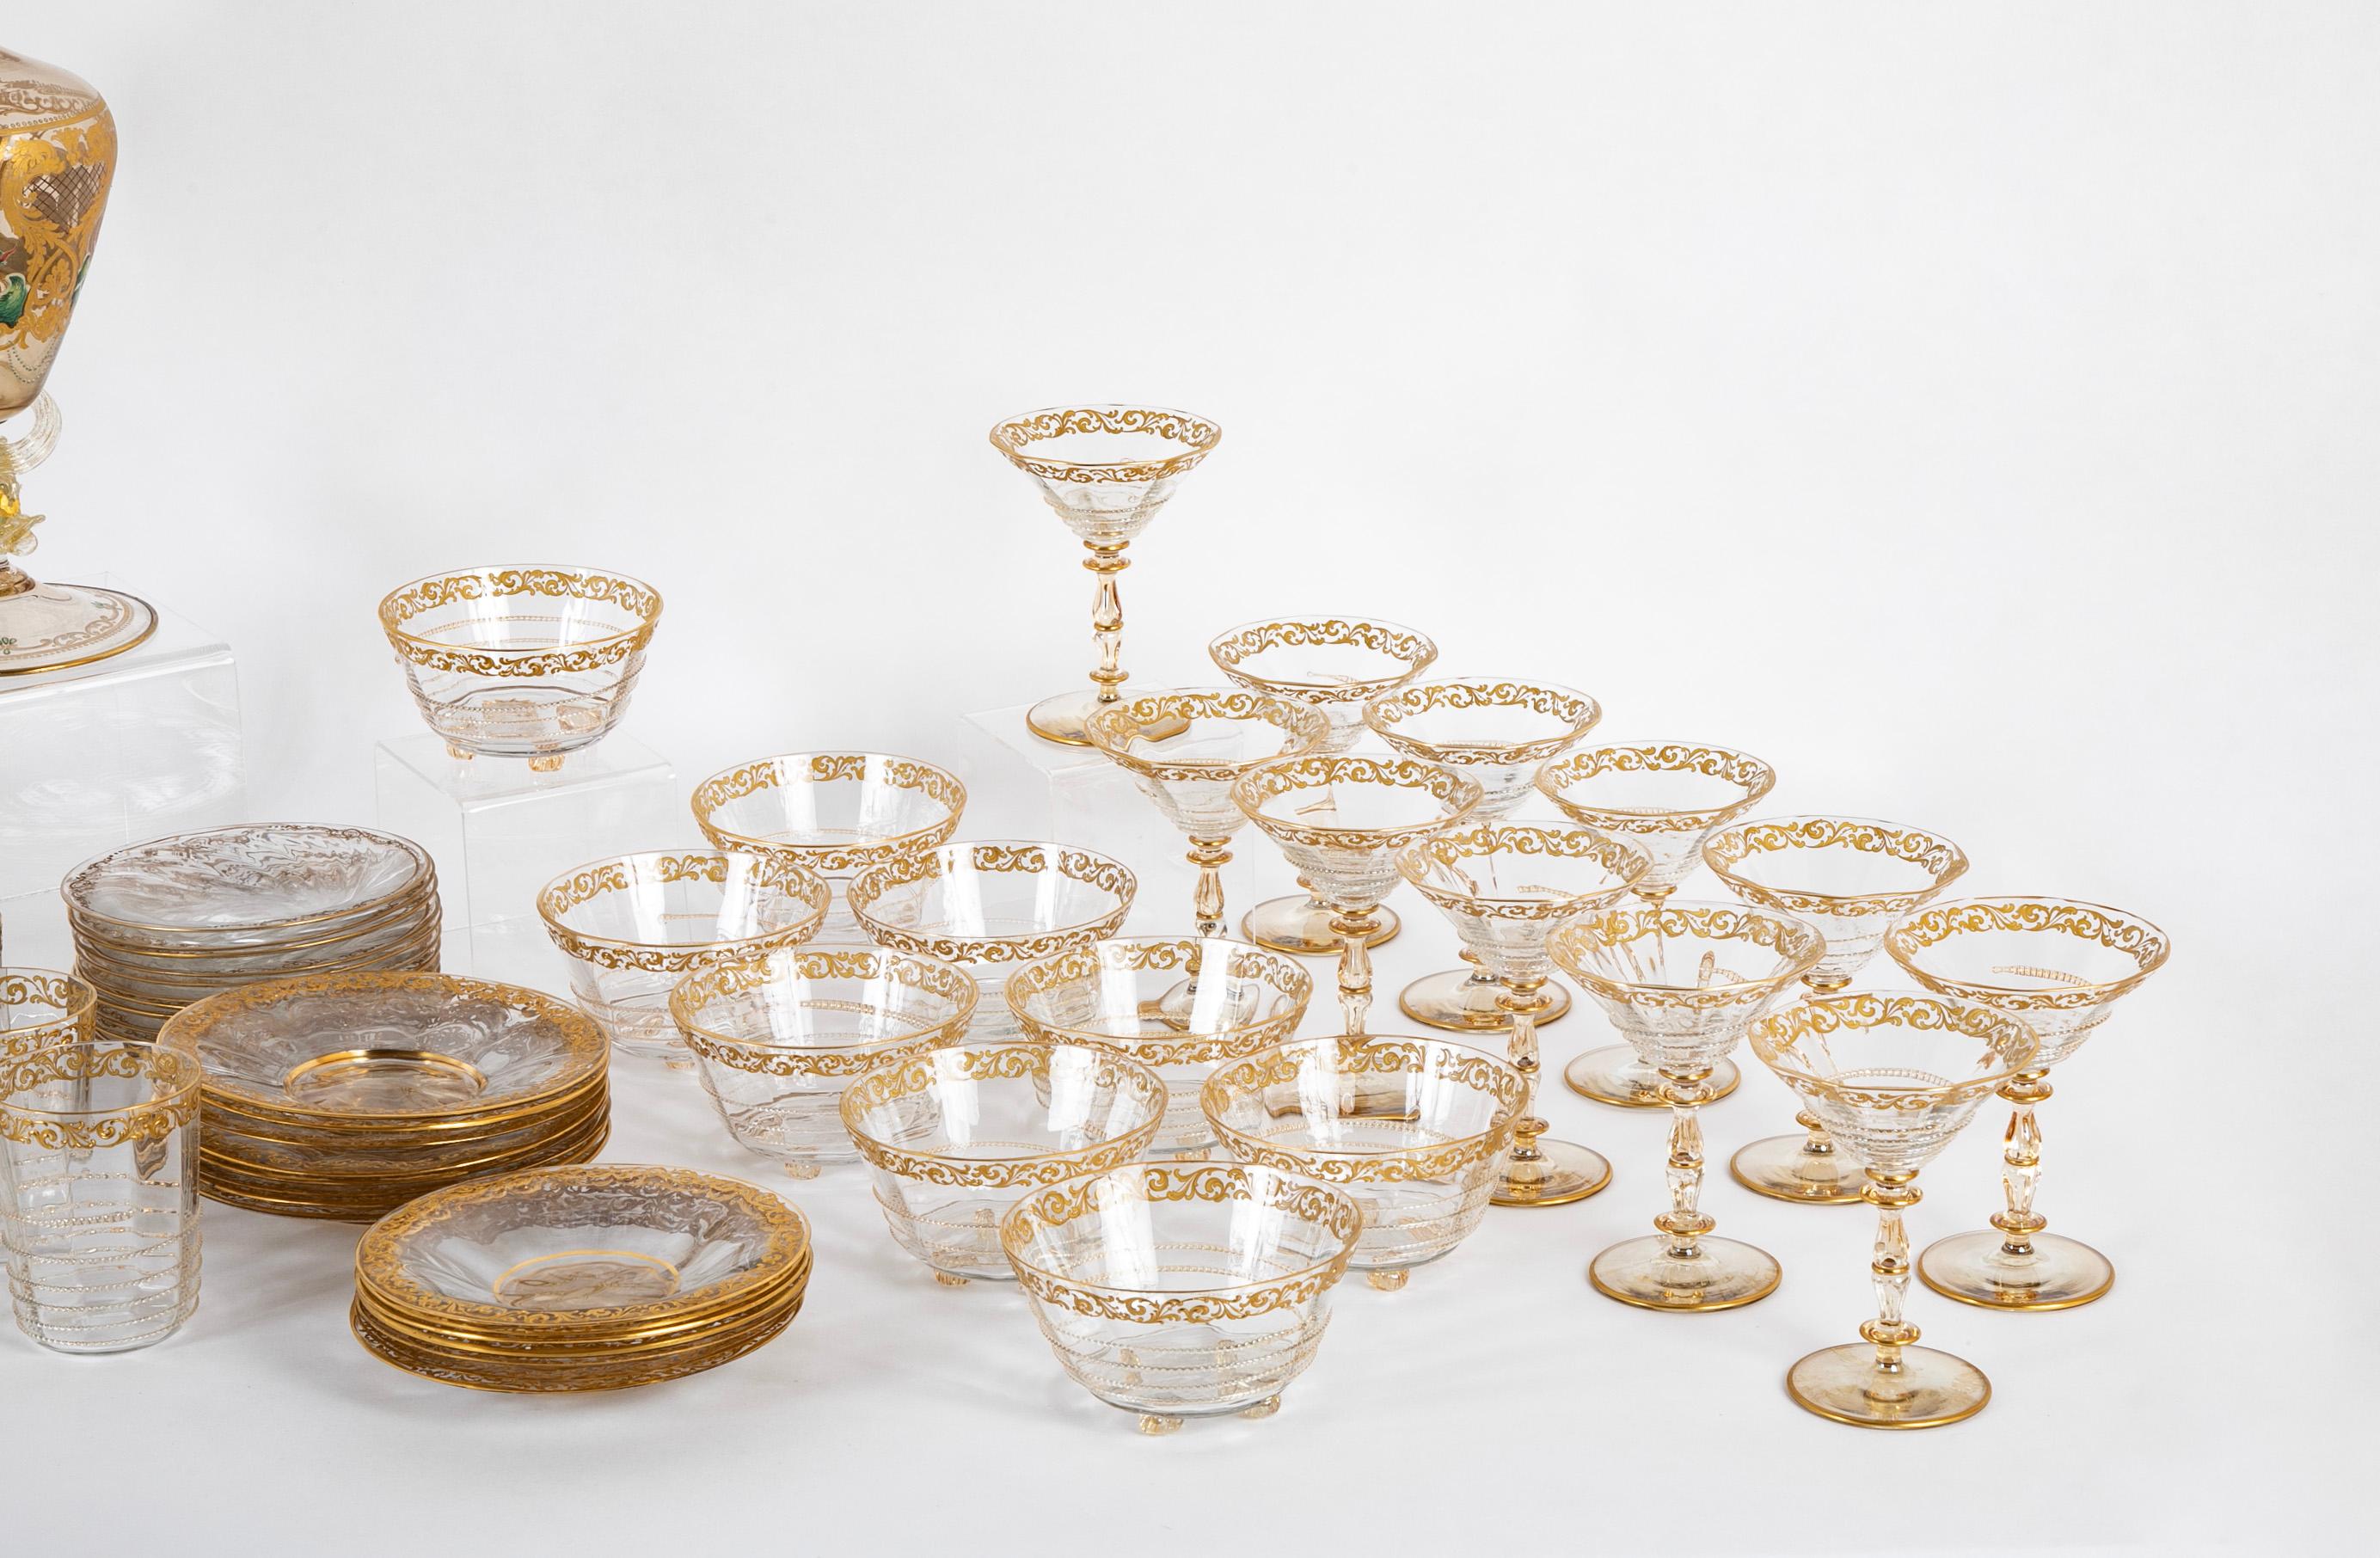 Eine prächtige Sammlung venezianischer Glaswaren des späten 19. und frühen 20. Jahrhunderts.  

Bestehend aus:  12 Becher : 4